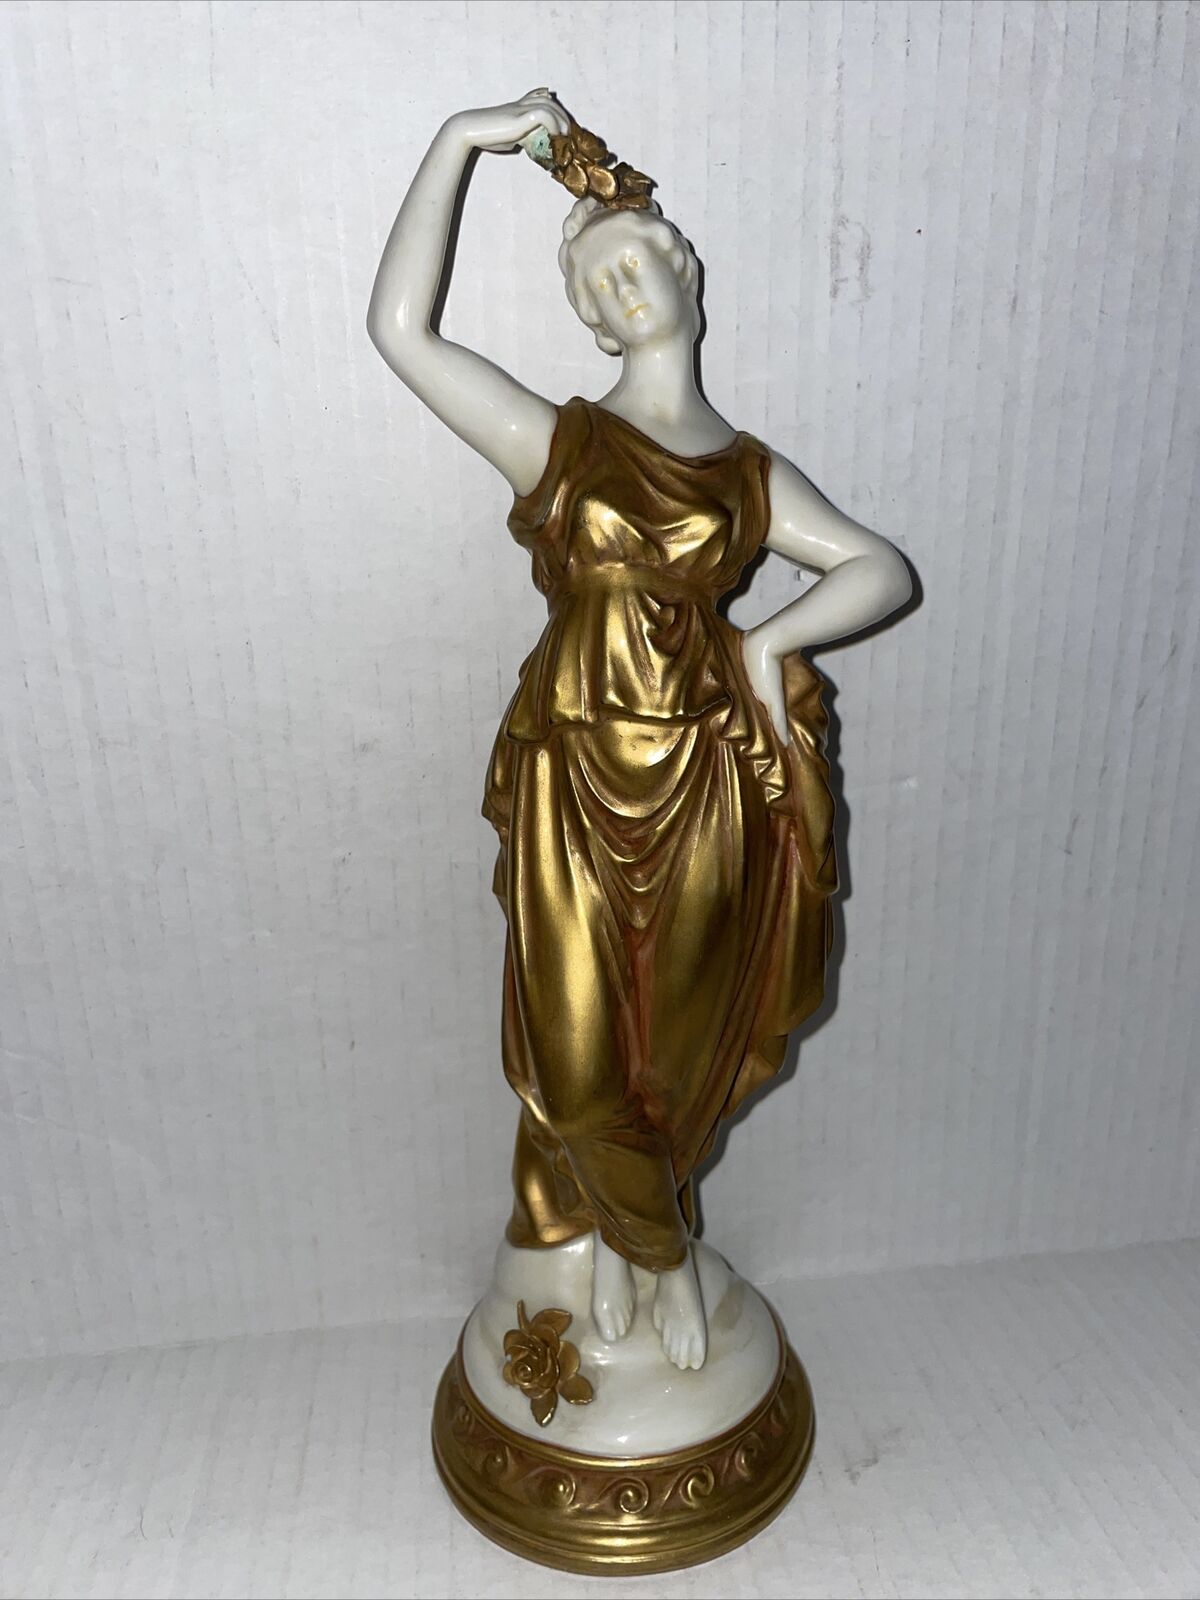 Original Capodimonte porcelain figurine 19 century